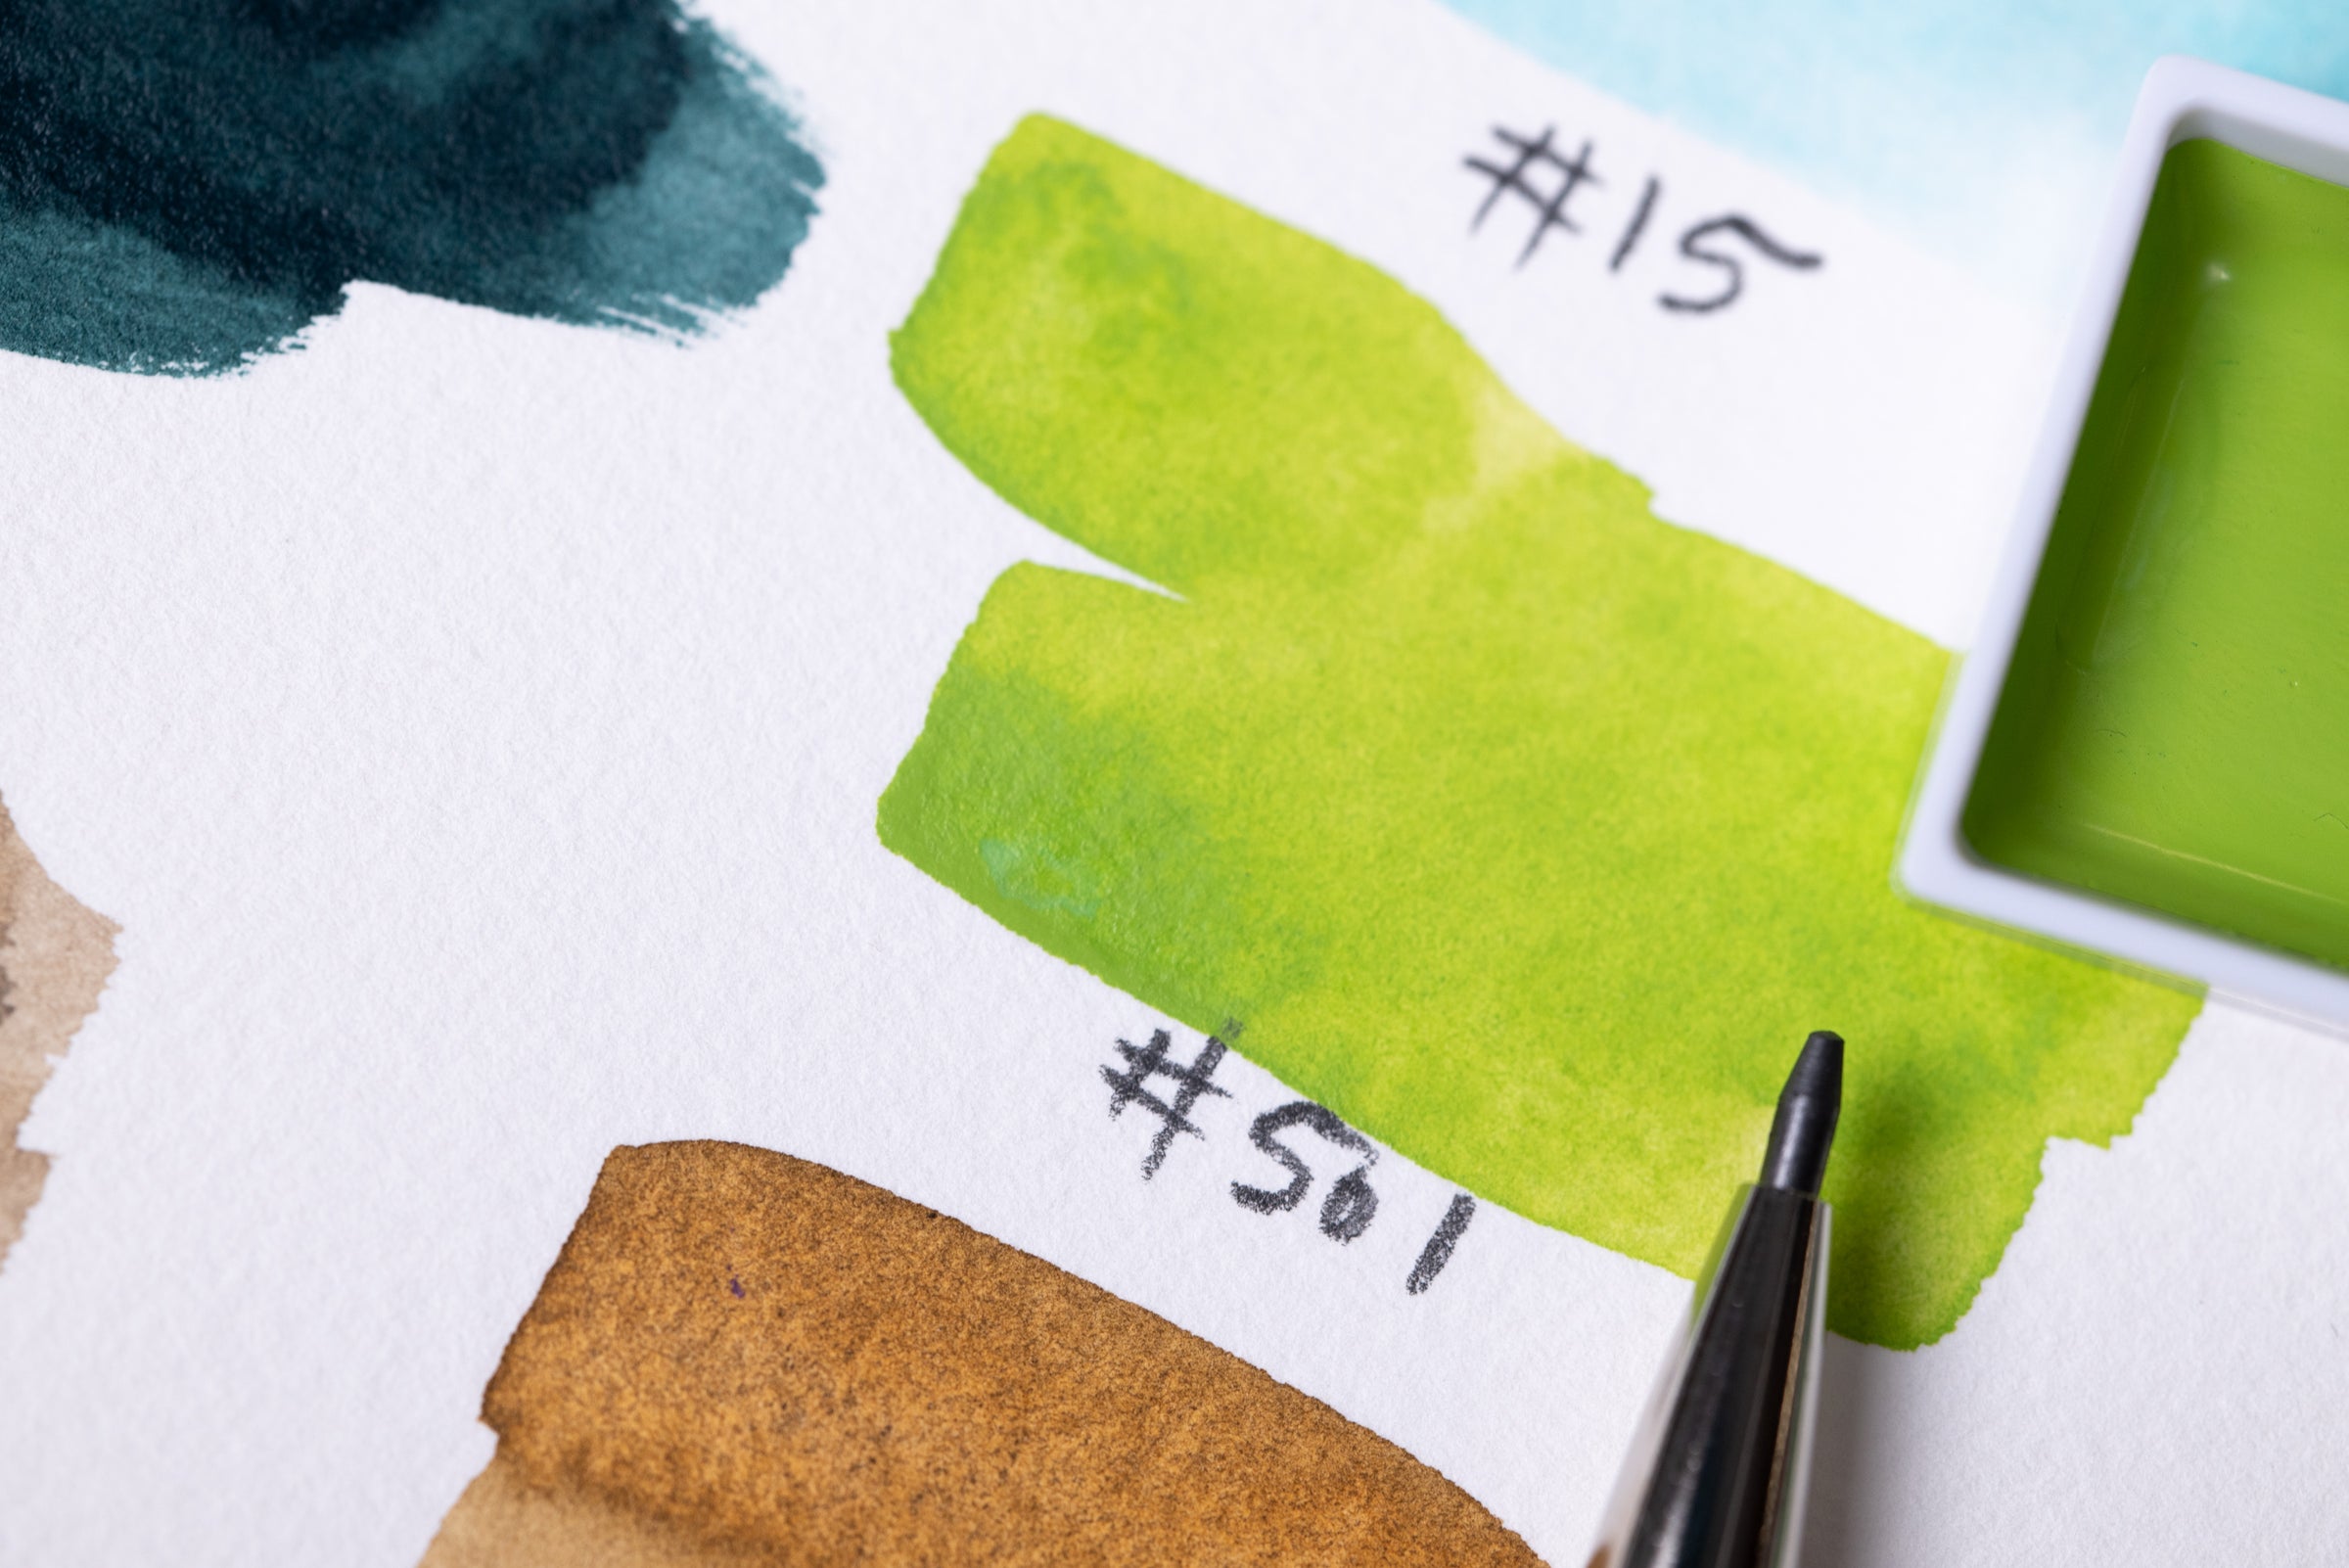 Kuretake] Gansai Tambi Watercolor Travel Kit // 14 colors – Baum